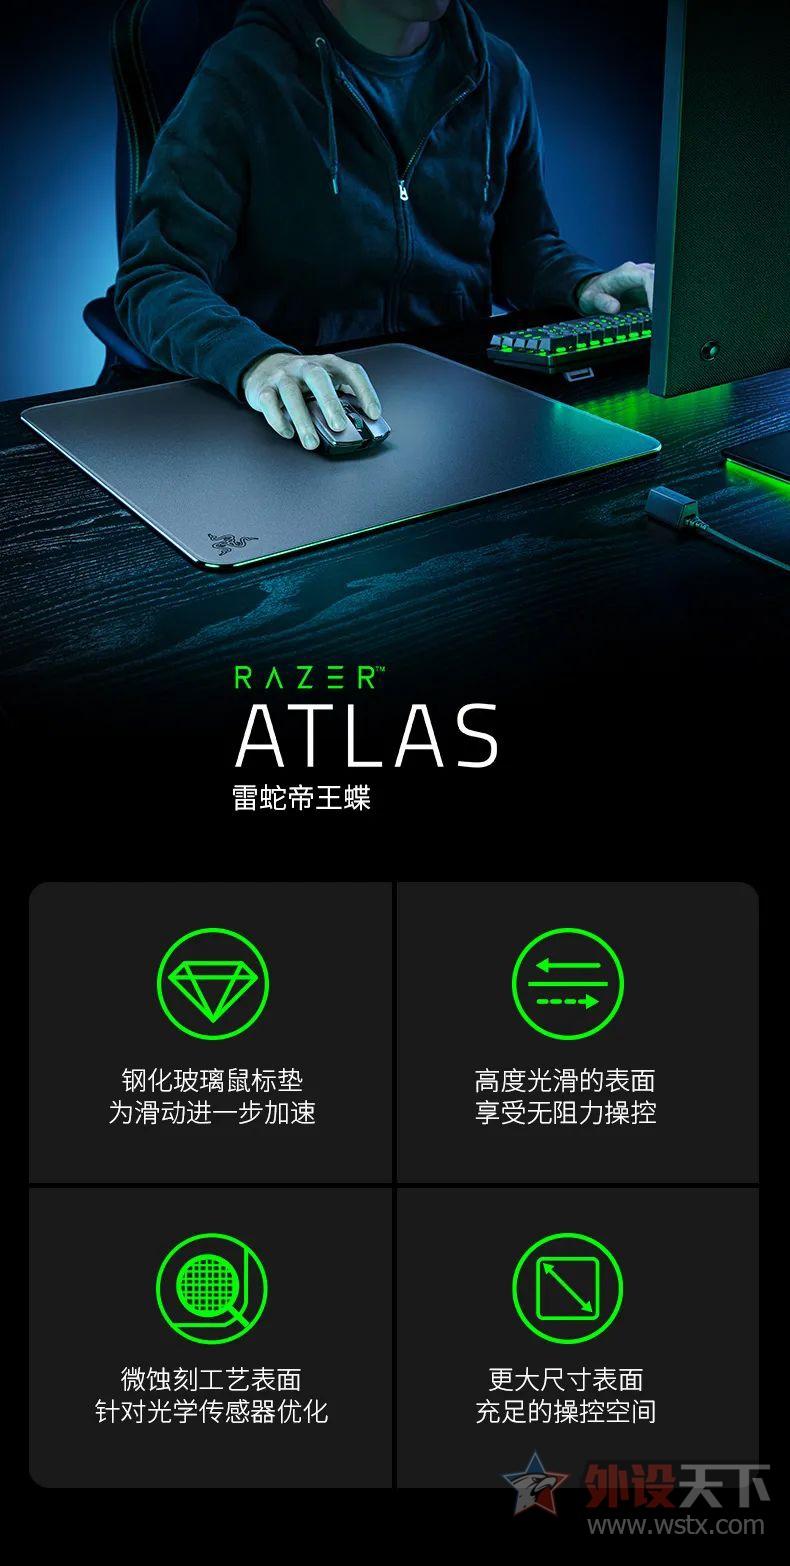 雷蛇帝王蝶玻璃鼠标垫发布新品ATLAS（硬质鼠标垫怎么样好在哪）